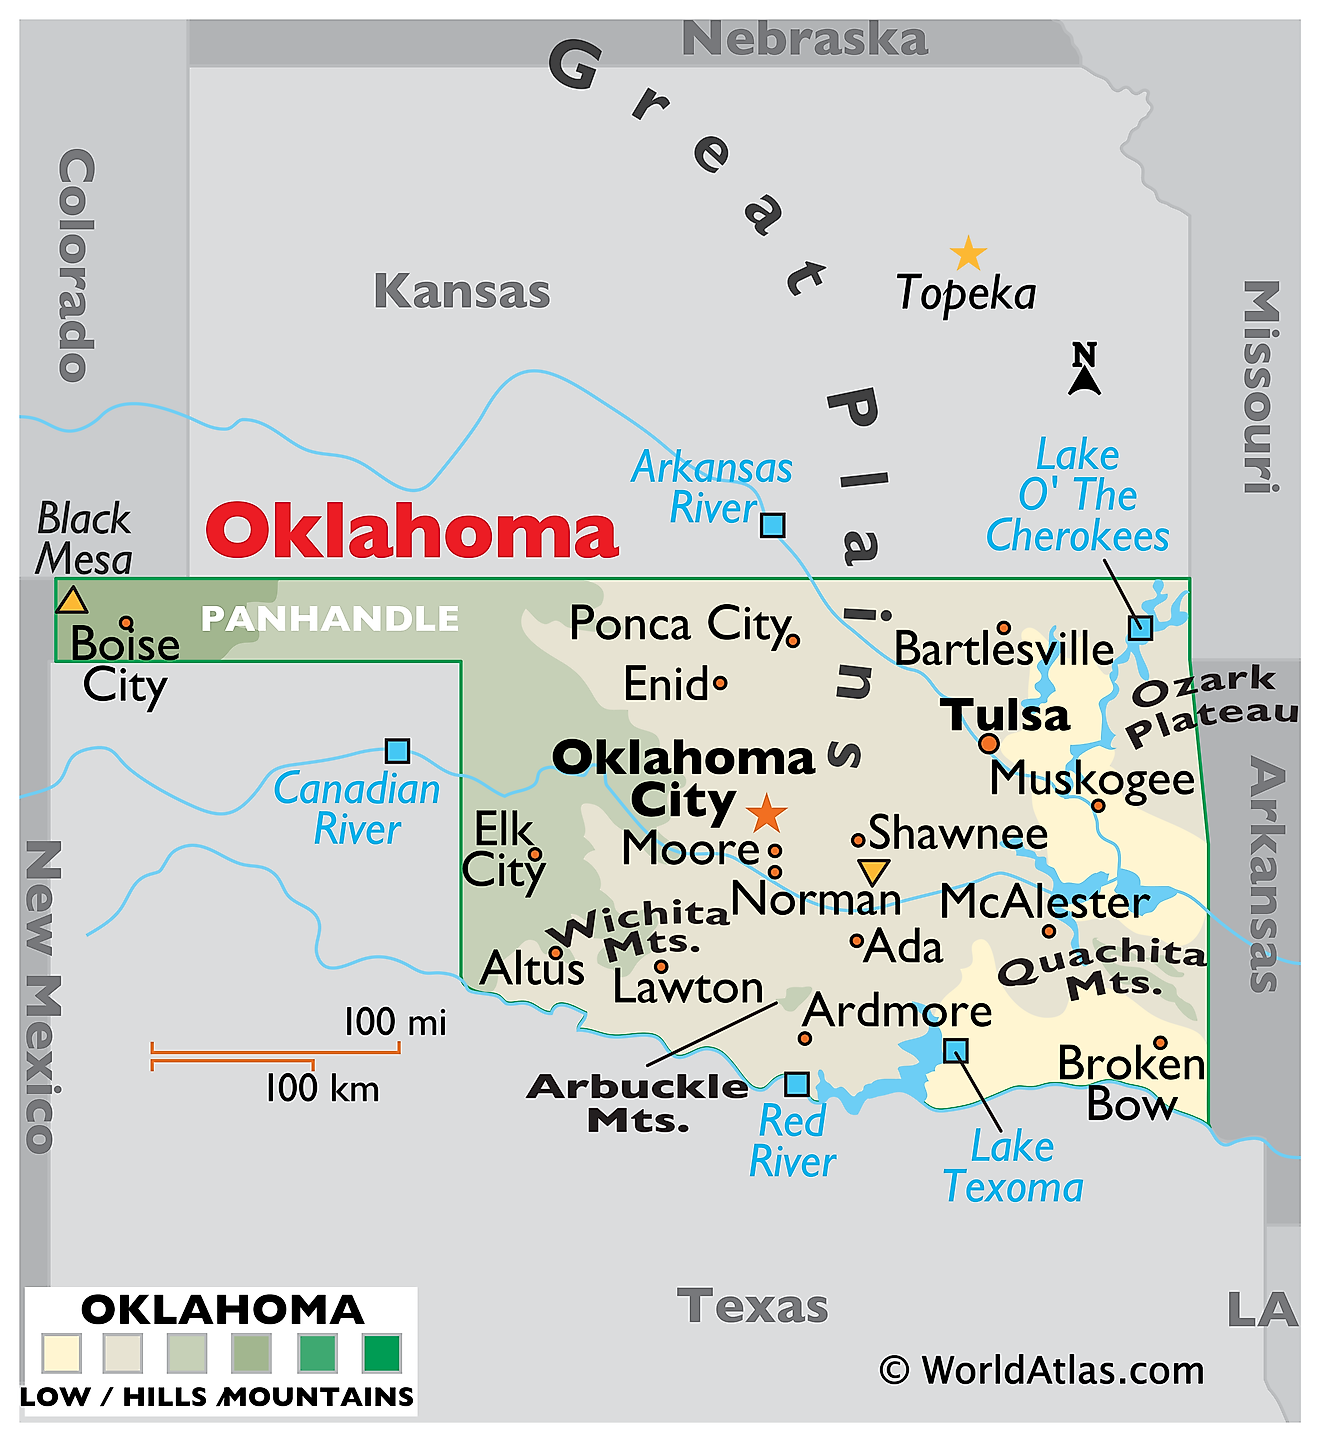 Mapa Físico de Oklahoma. Muestra las características físicas de Oklahoma, incluidas las cadenas montañosas, los principales ríos y lagos.